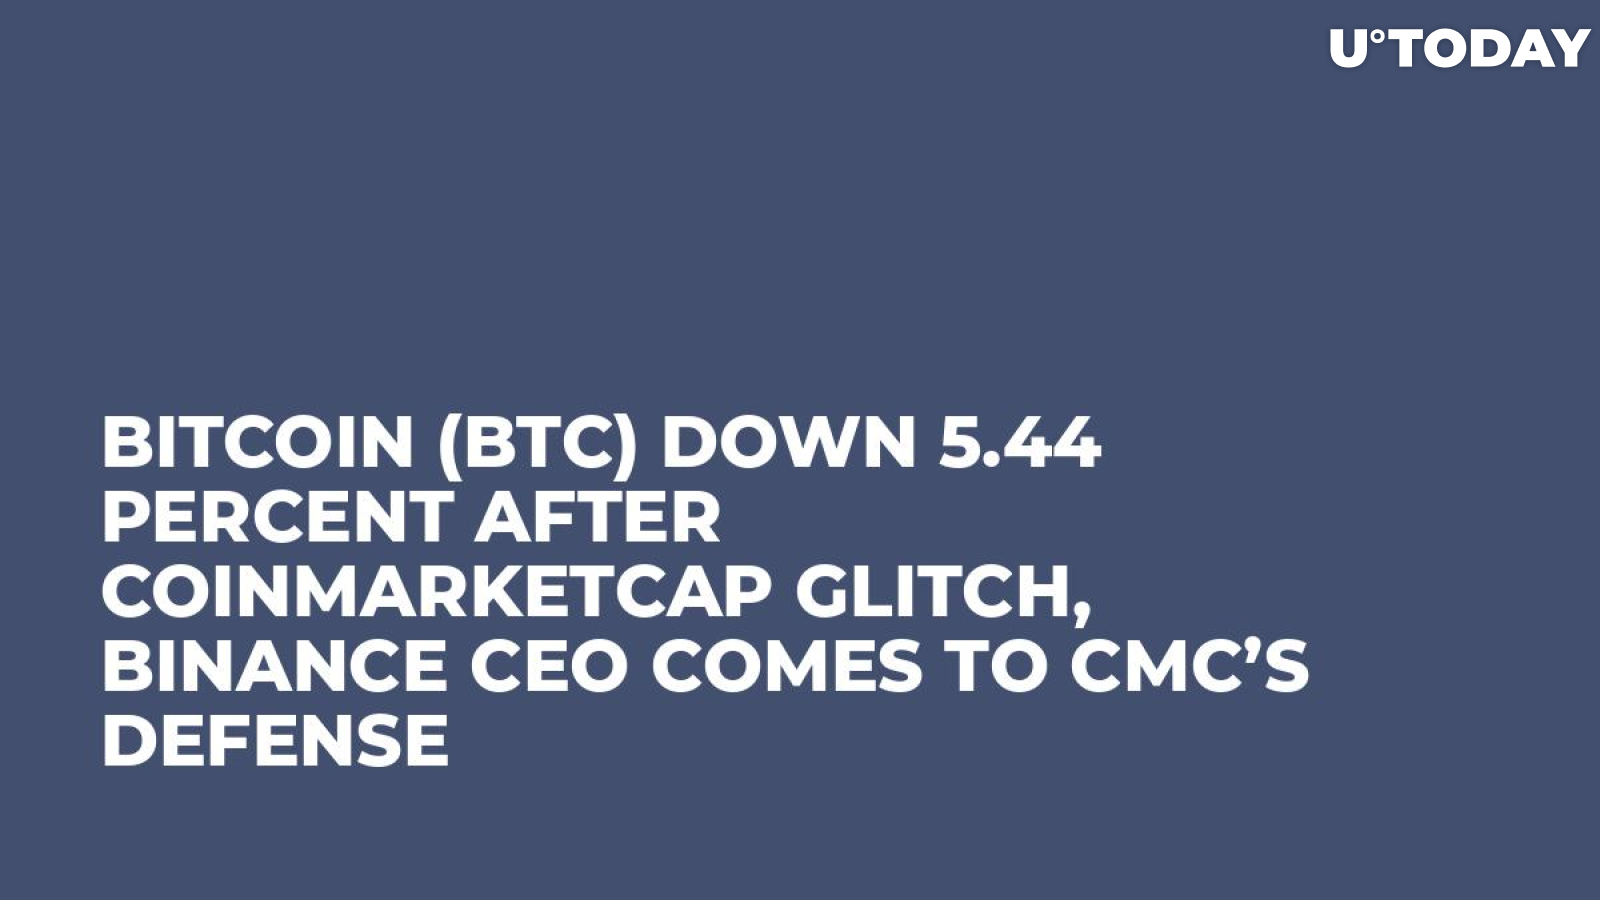 Bitcoin (BTC) Down 5.44 Percent After CoinMarketCap Glitch, Binance CEO Comes to CMC’s Defense